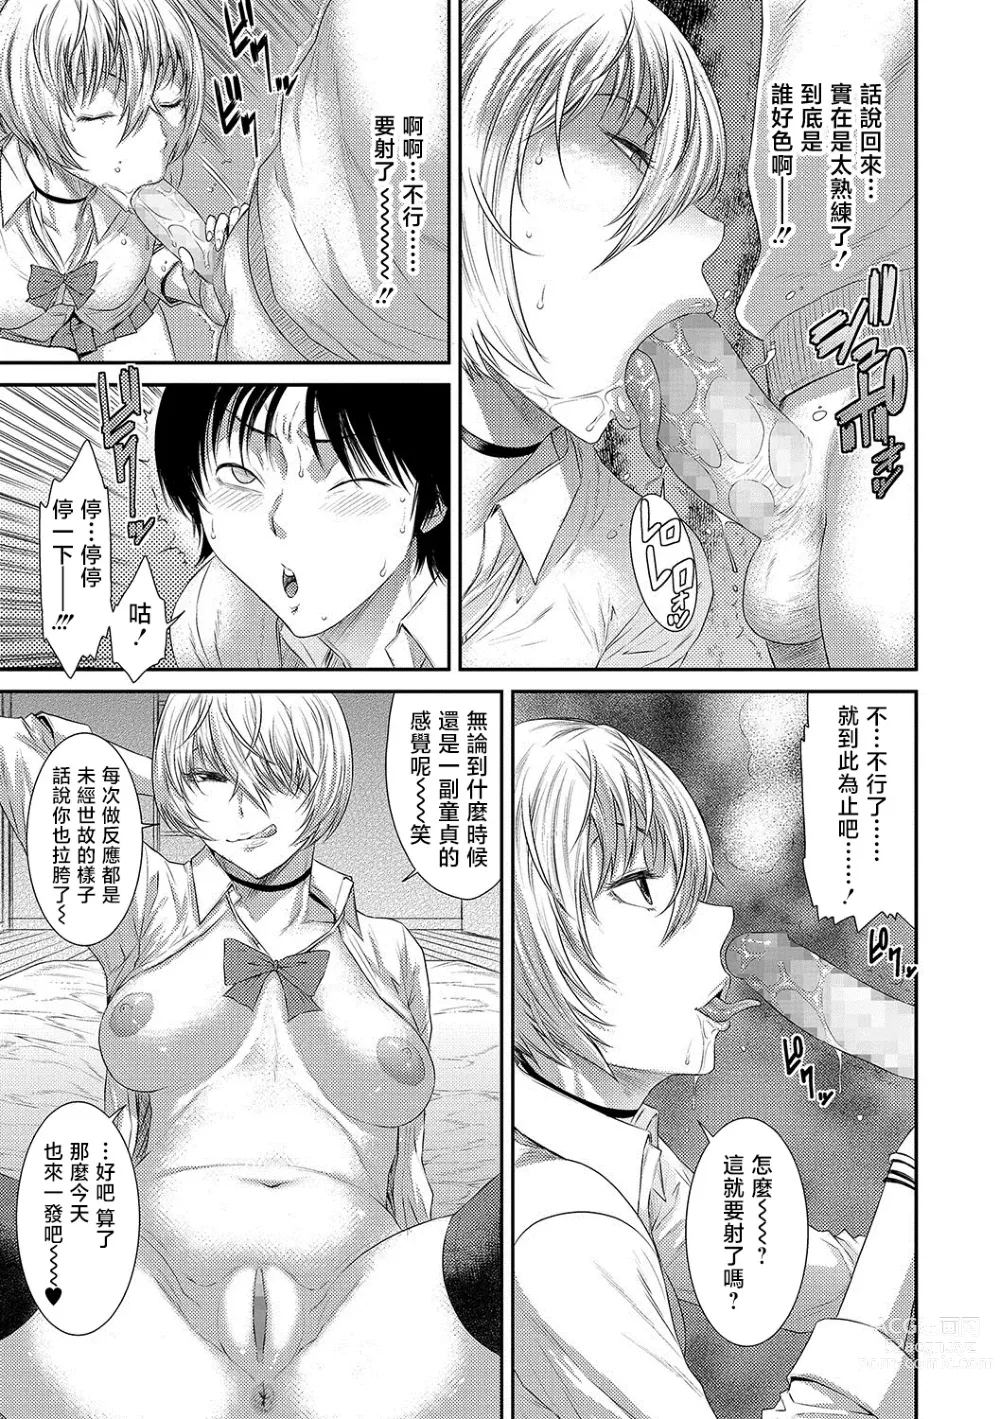 Page 7 of manga Classmate